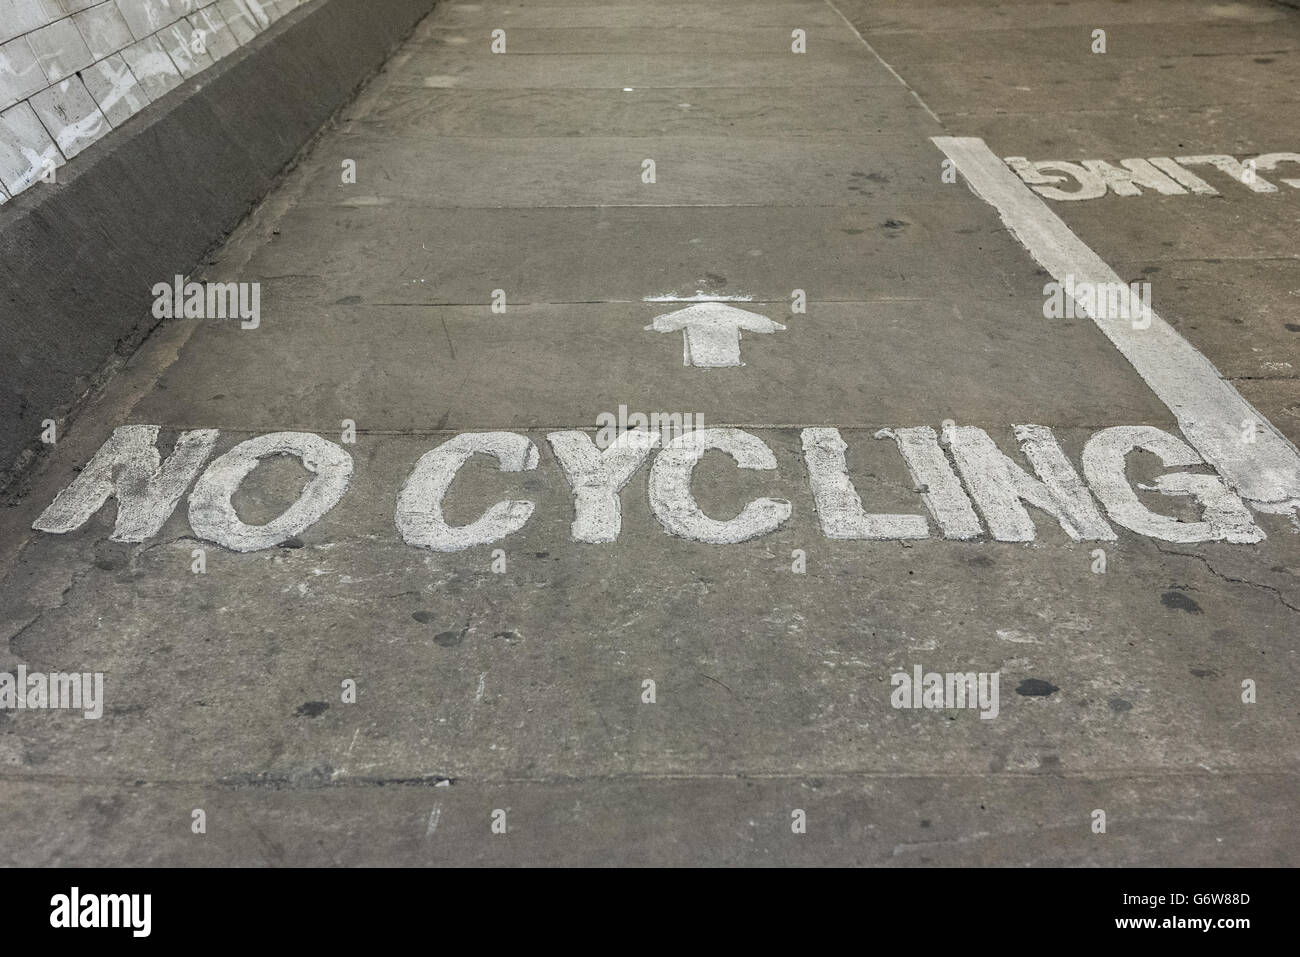 No hay signo de ciclismo escrito el piso del túnel de Greenwich, en Londres, Reino Unido Foto de stock